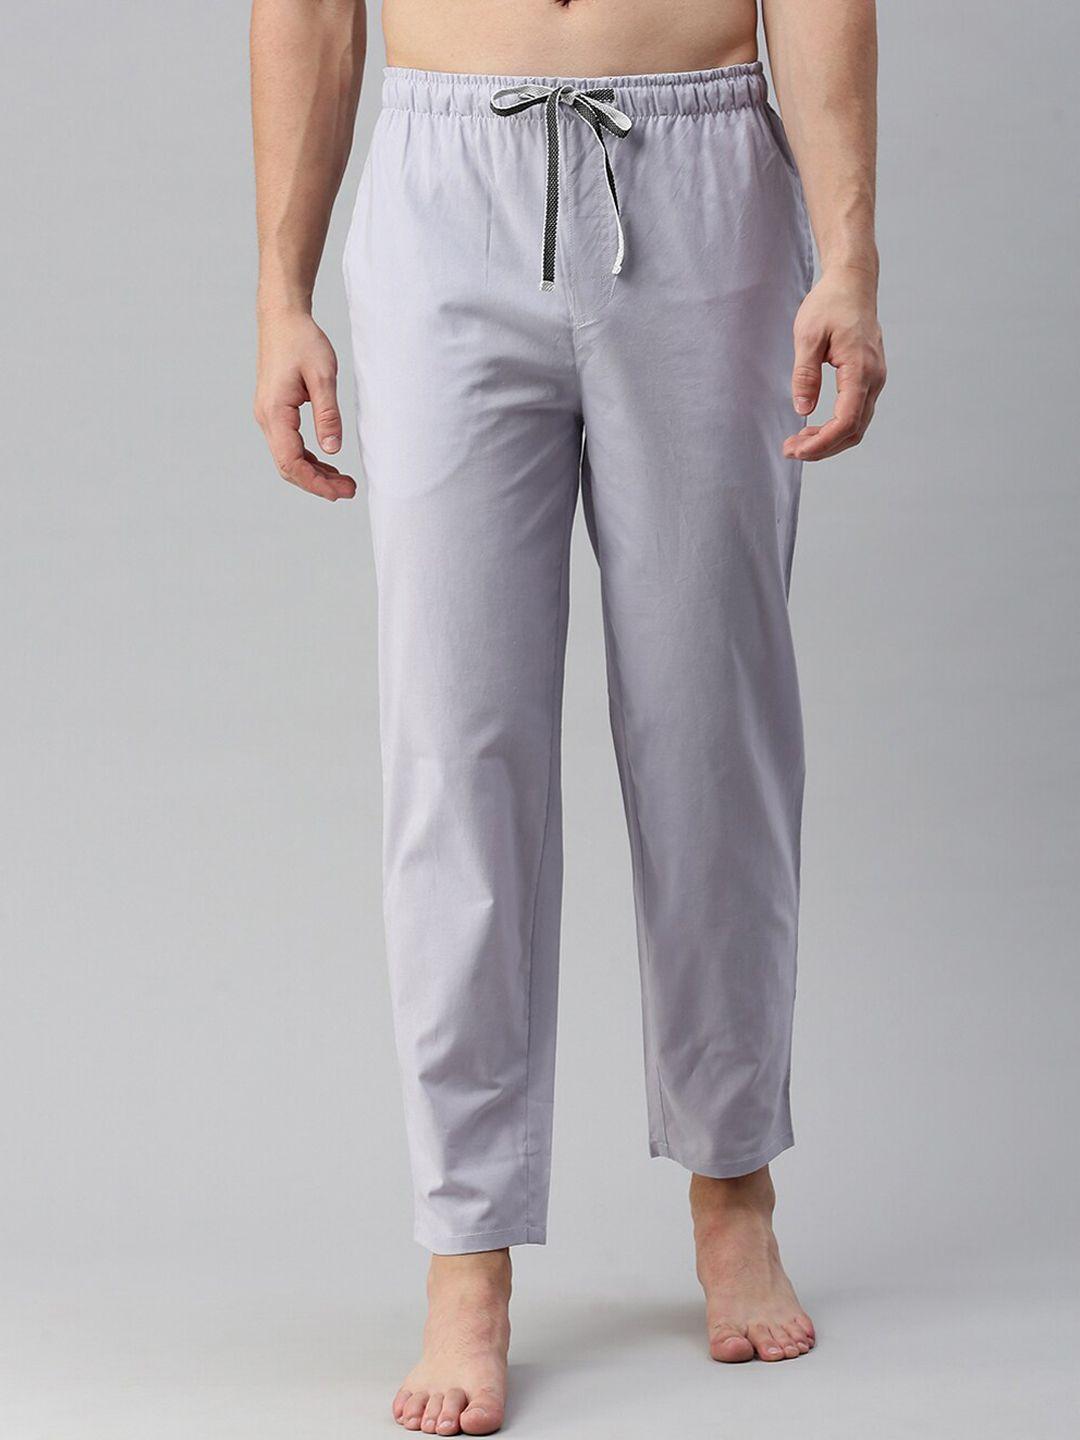 bareblow men mid-rise cotton lounge pants